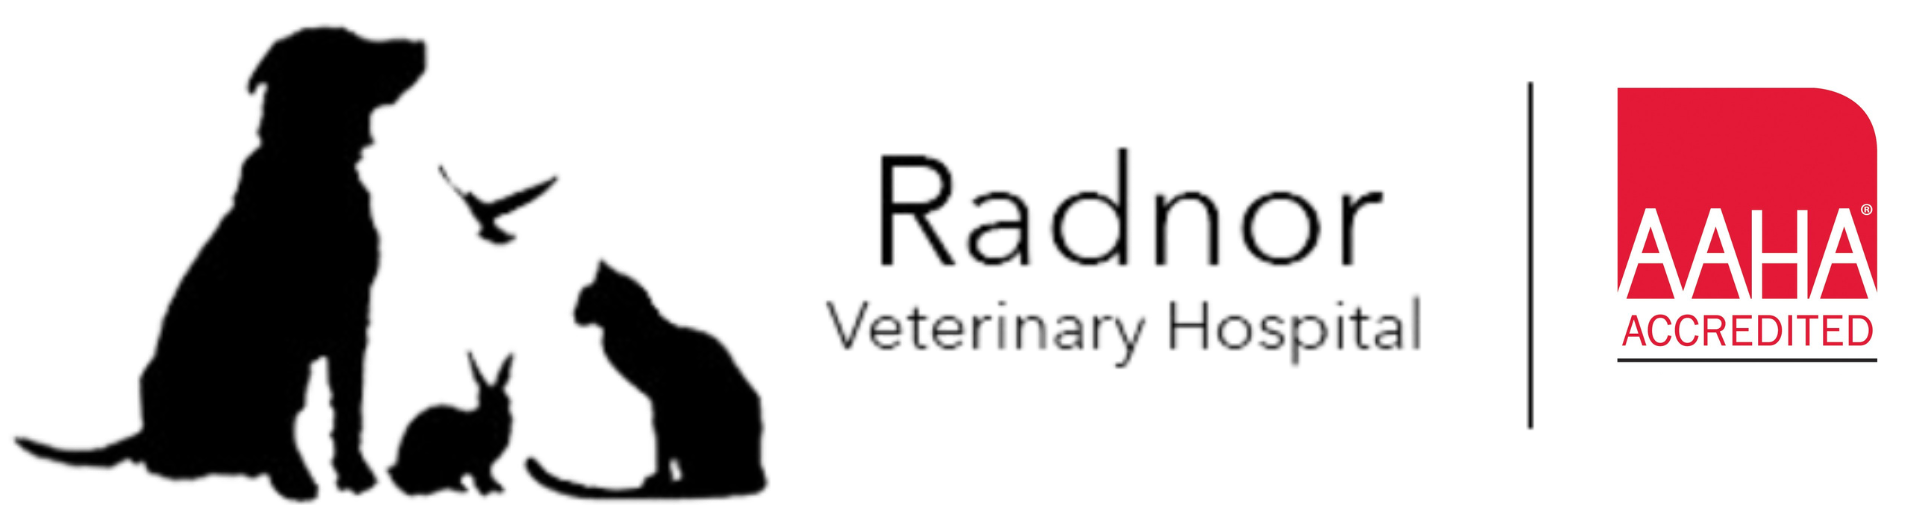 Radnor veterinary hospital logo